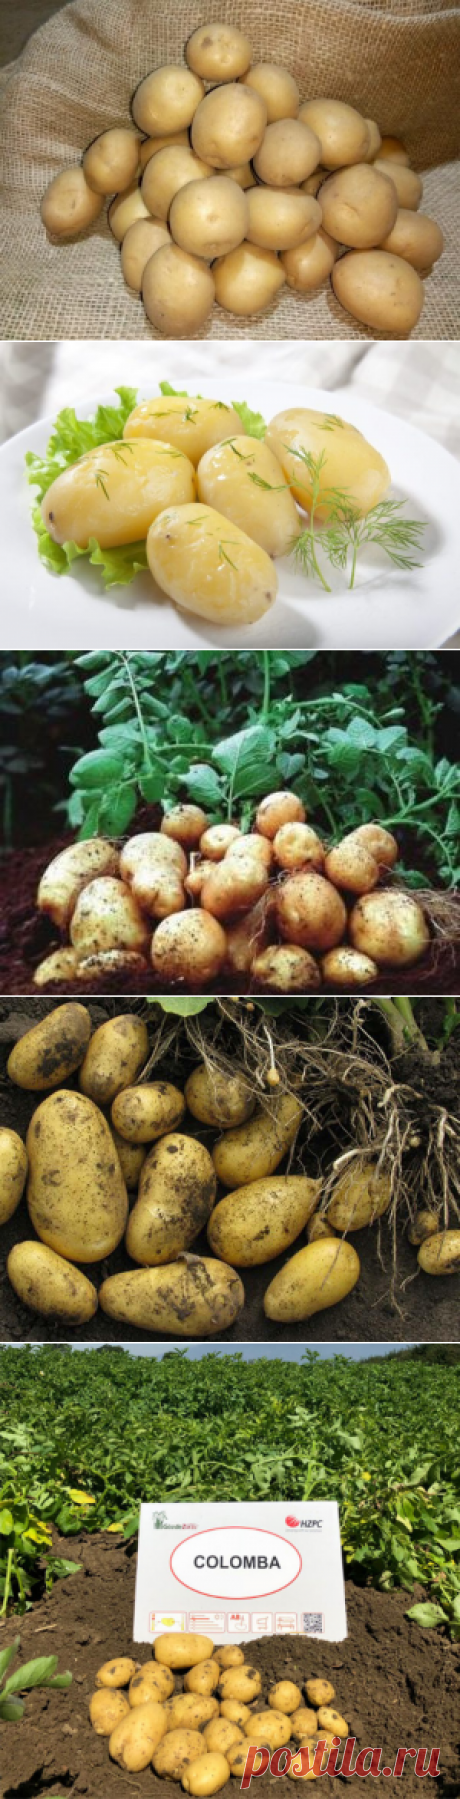 Картофель Коломбо характеристики и описание сорта, отзывы, фото, урожайность, посадка и уход, вкусовые качества